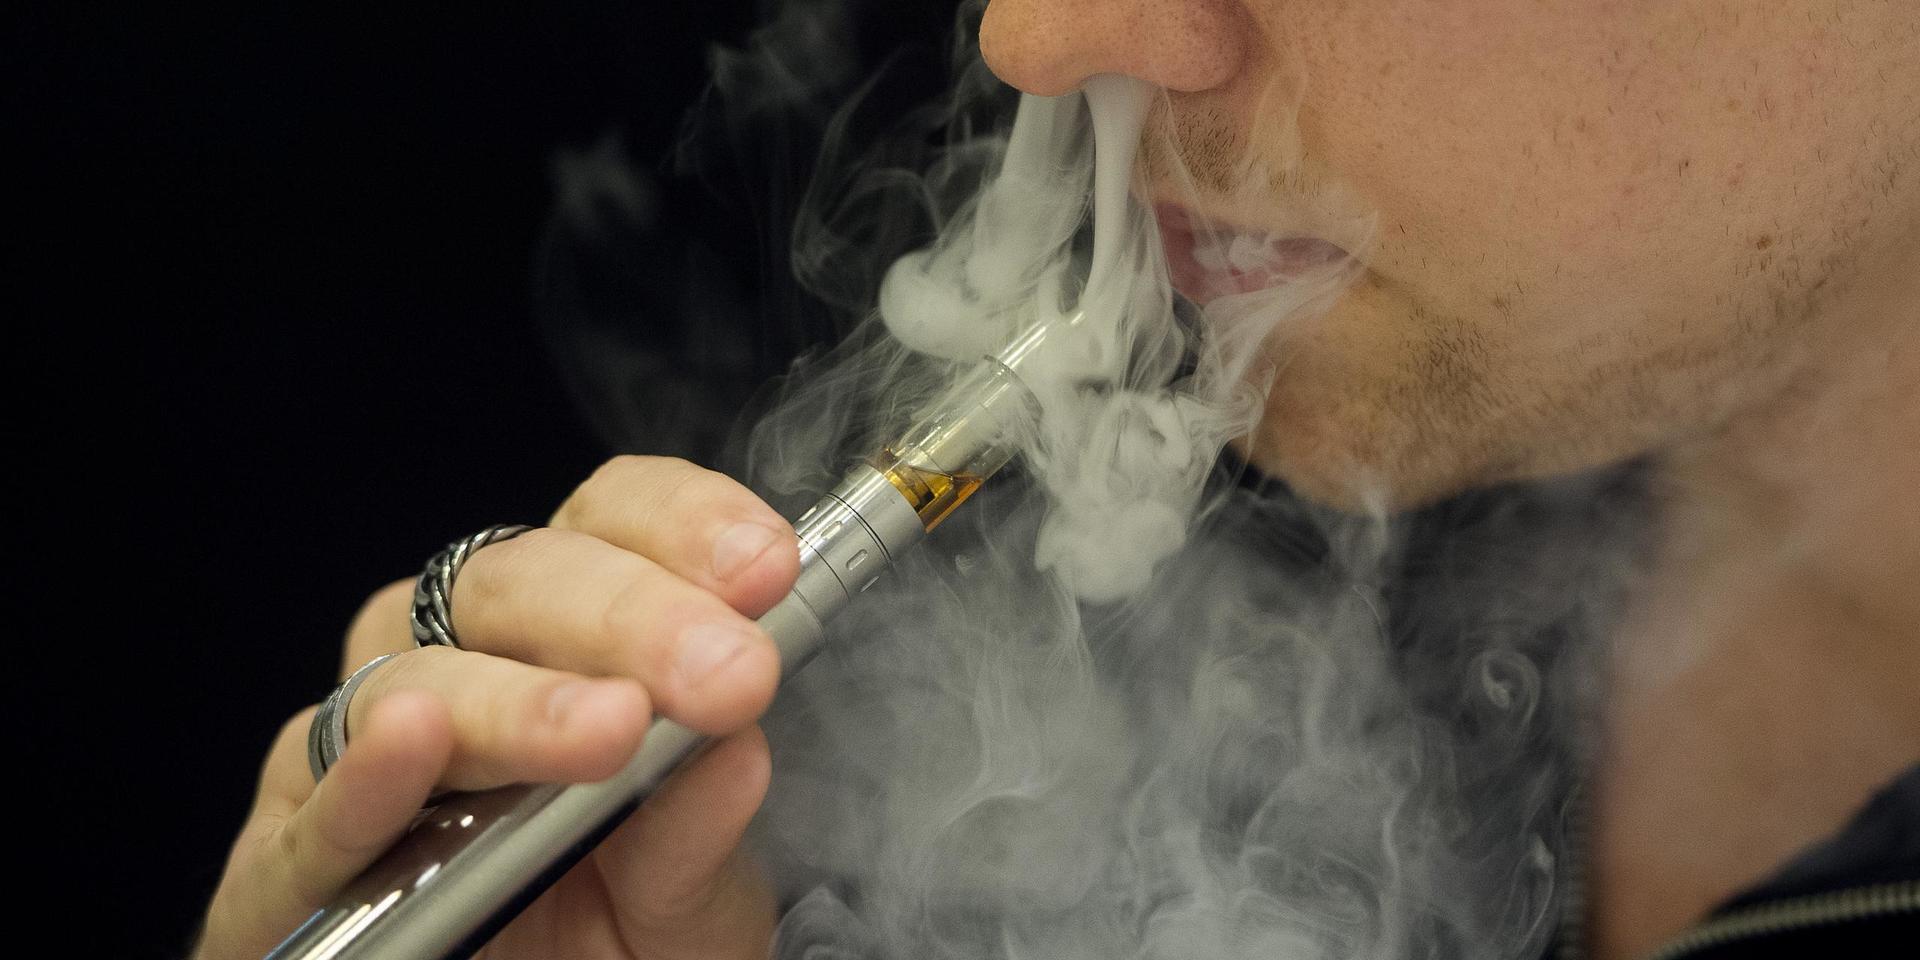 Märkliga resonemang bakom föreslagna regleringar av nikotinprodukter.